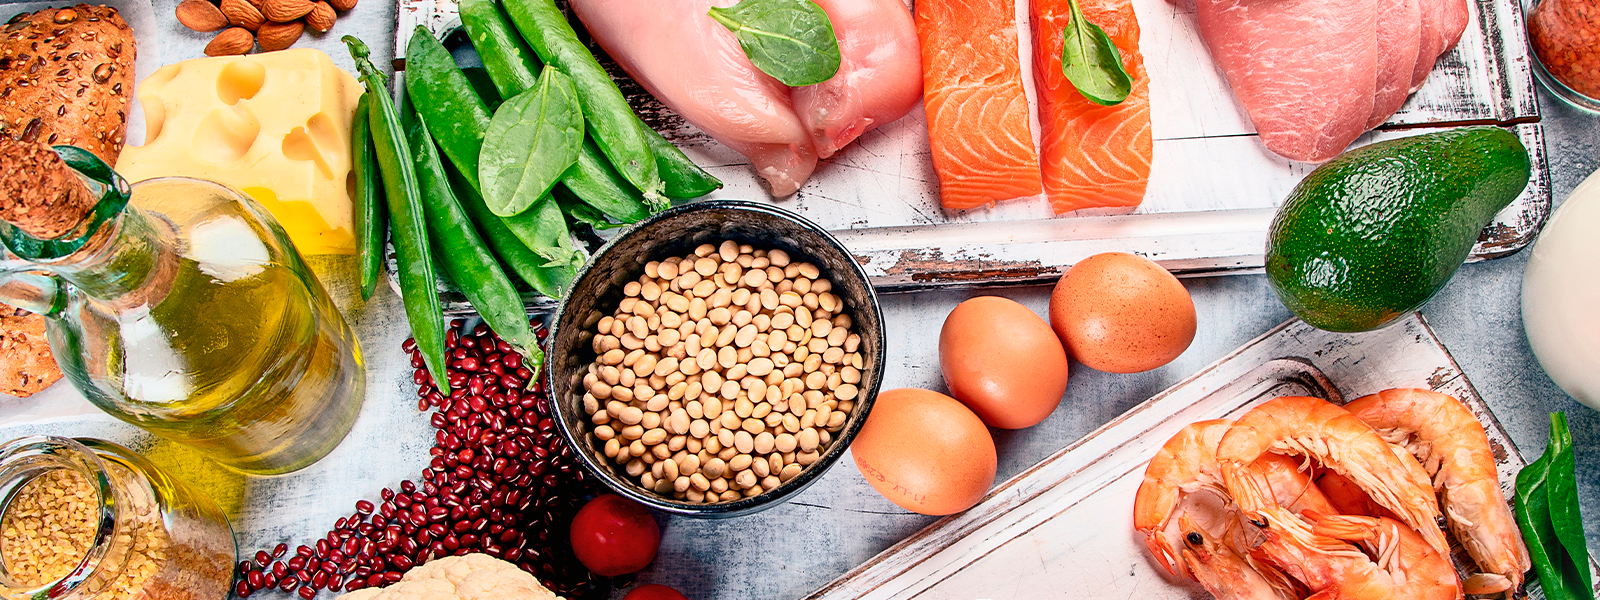 La dieta de una persona con diabetes debe incluir carbohidratos provenientes de cereales, frutas, verduras, semillas, leguminosas y lácteos.